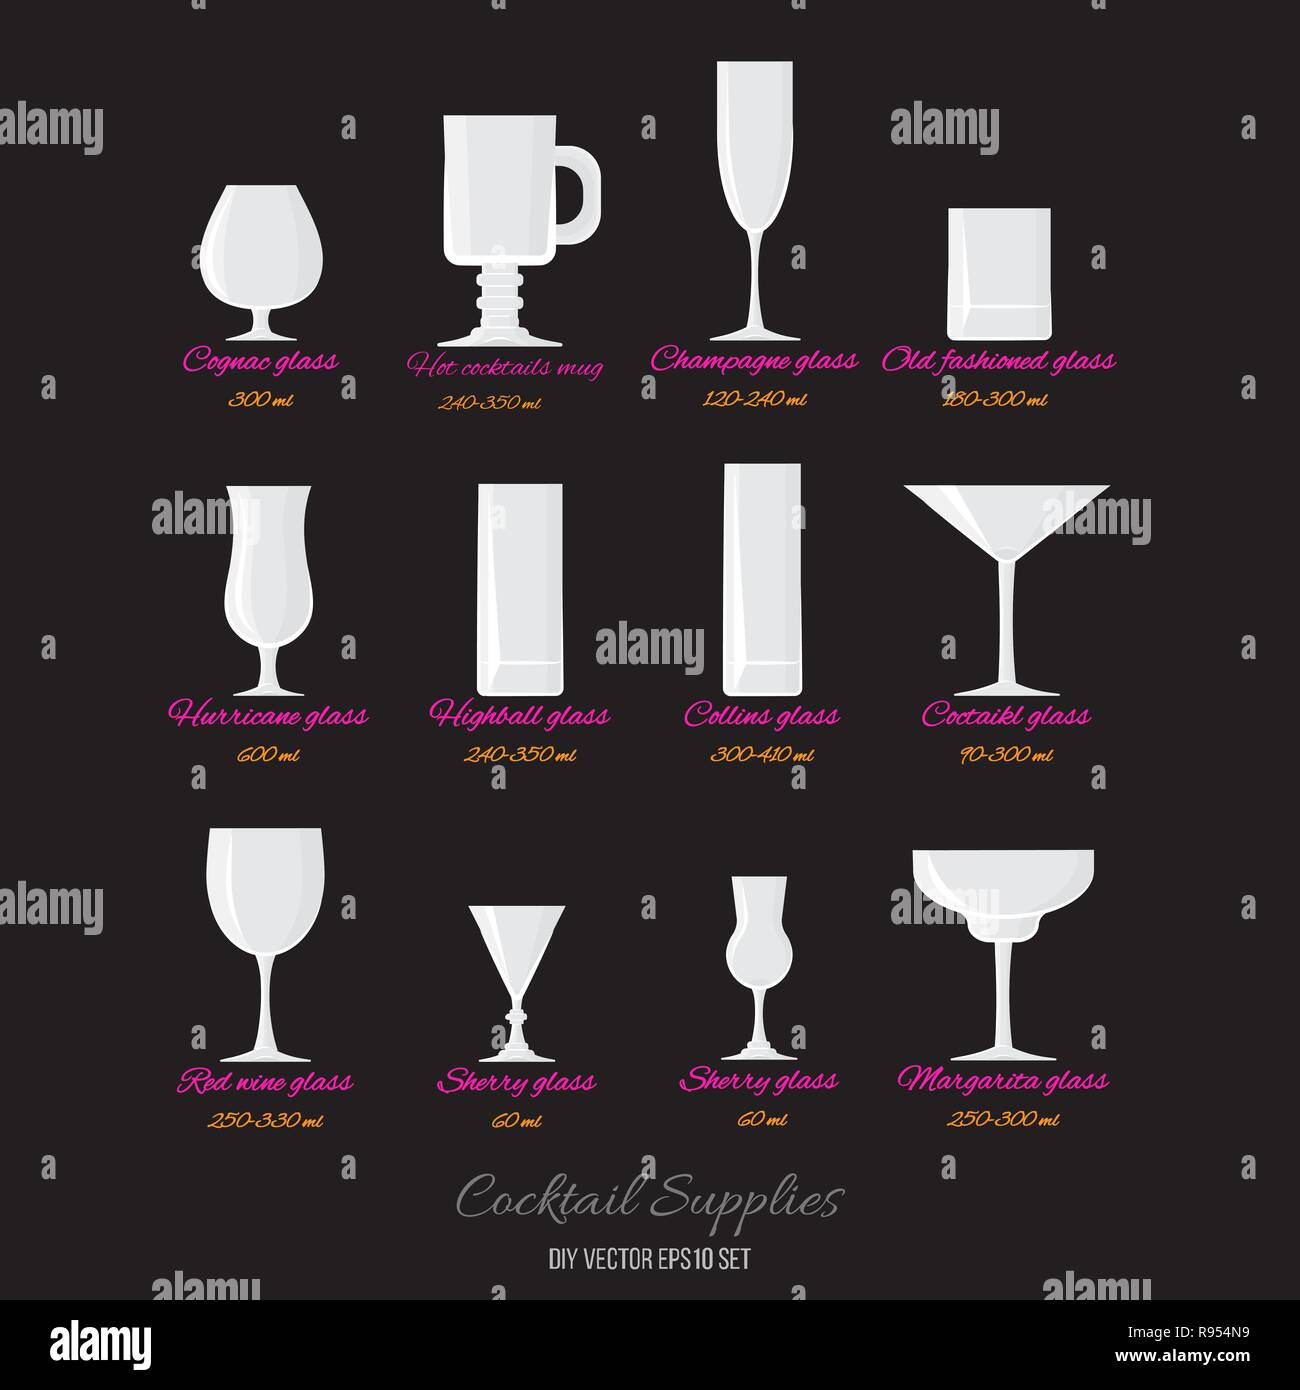 Vektor cocktails Gläser mit Namen und Glas. Menü Dekoration DIY-Vektor für  Web und Print im Retro-Stil eingerichtet Stock-Vektorgrafik - Alamy